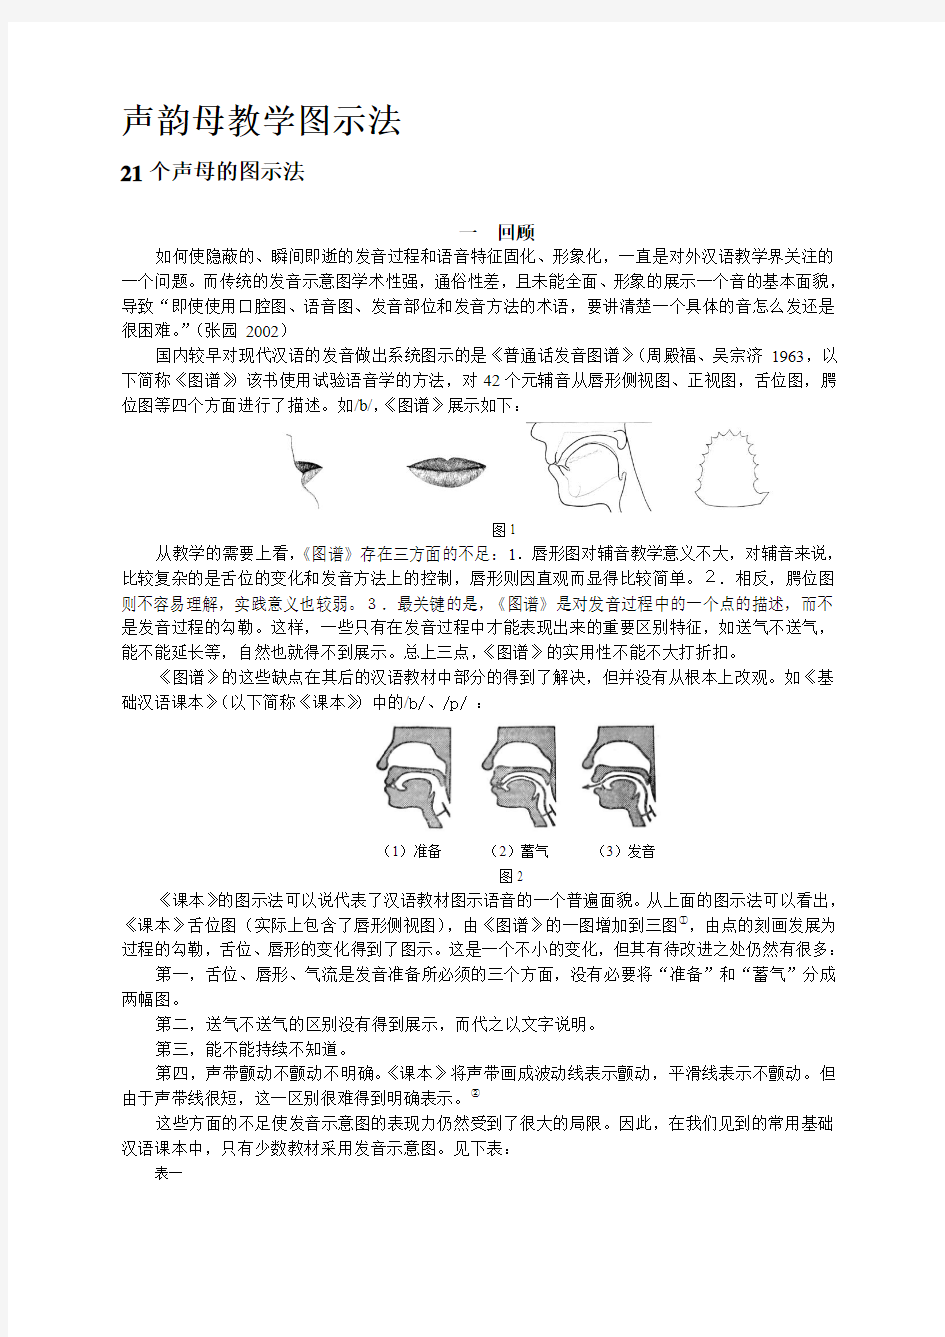 声韵母教学图示法-对外汉语教学